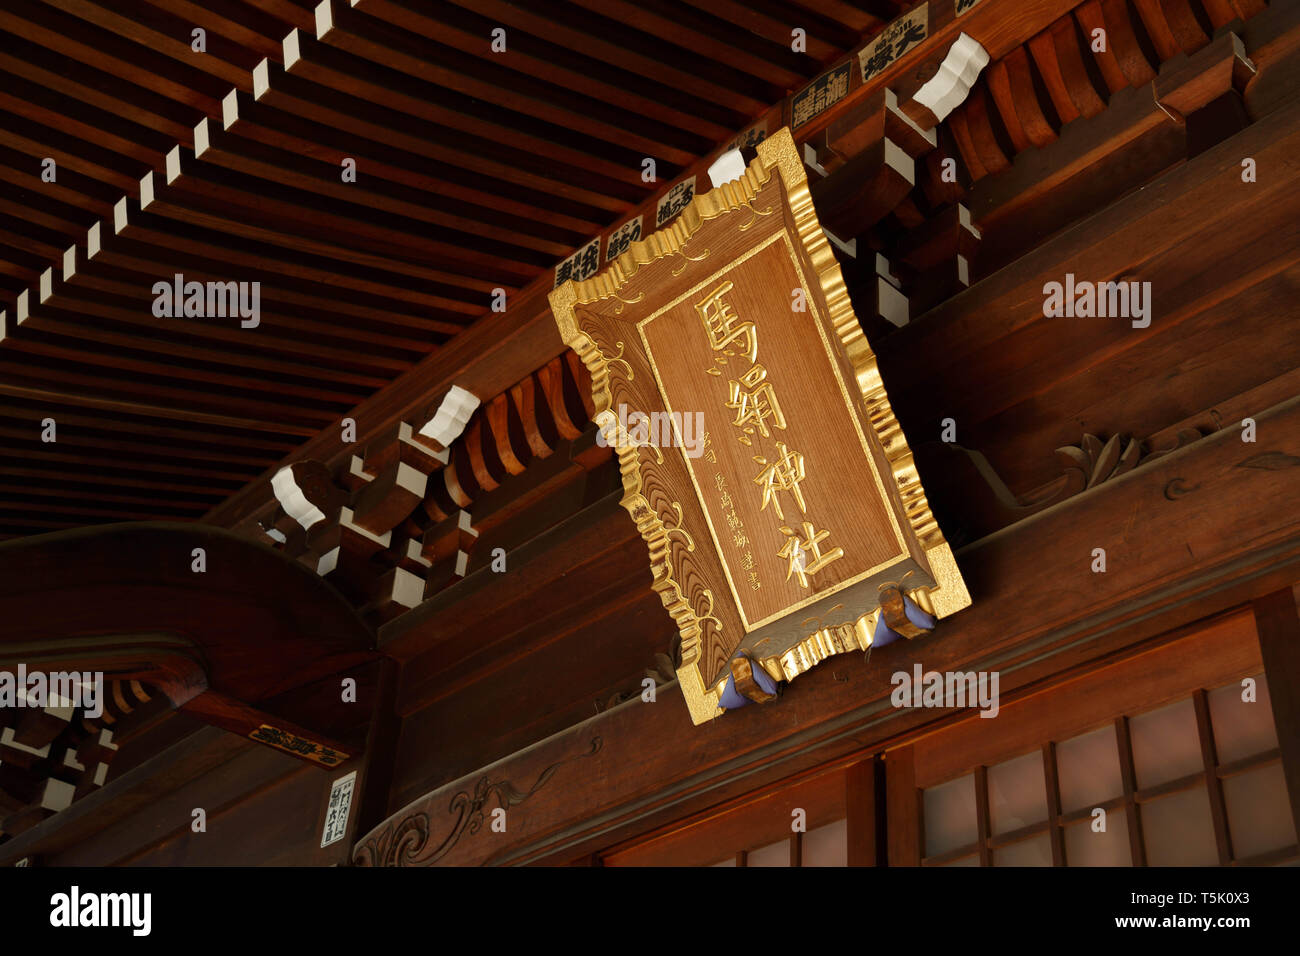 Une plaque d'or signer le aginu écrit culte' est suspendu au-dessus de l'entrée principale du bâtiment à Maginu culte, Kawasaki, Japon. Banque D'Images